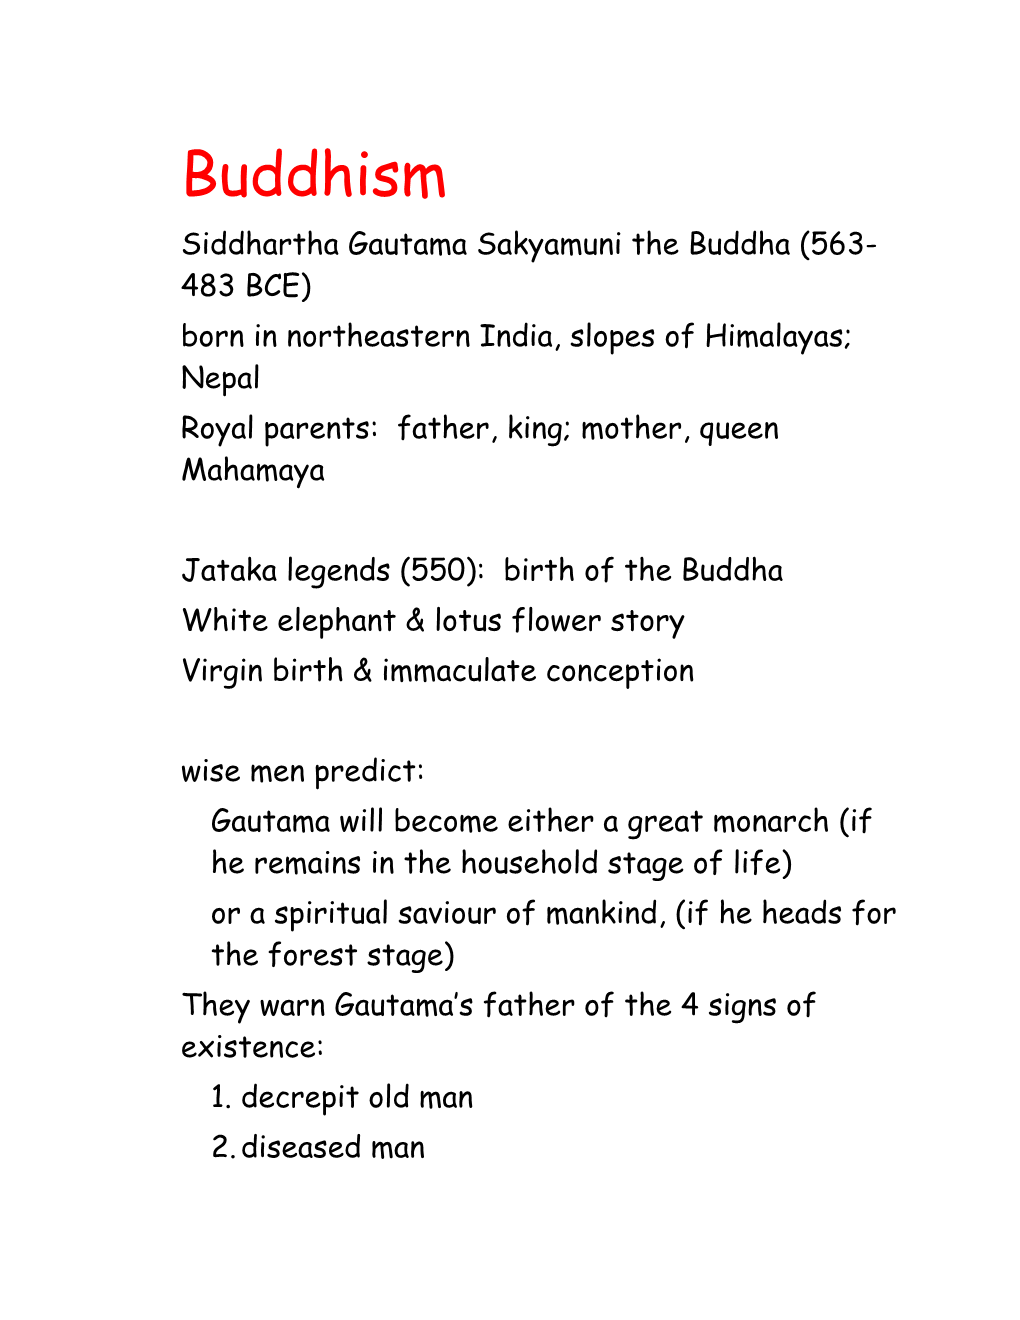 Siddhartha Gautama Sakyamuni the Buddha (563-483 BCE)